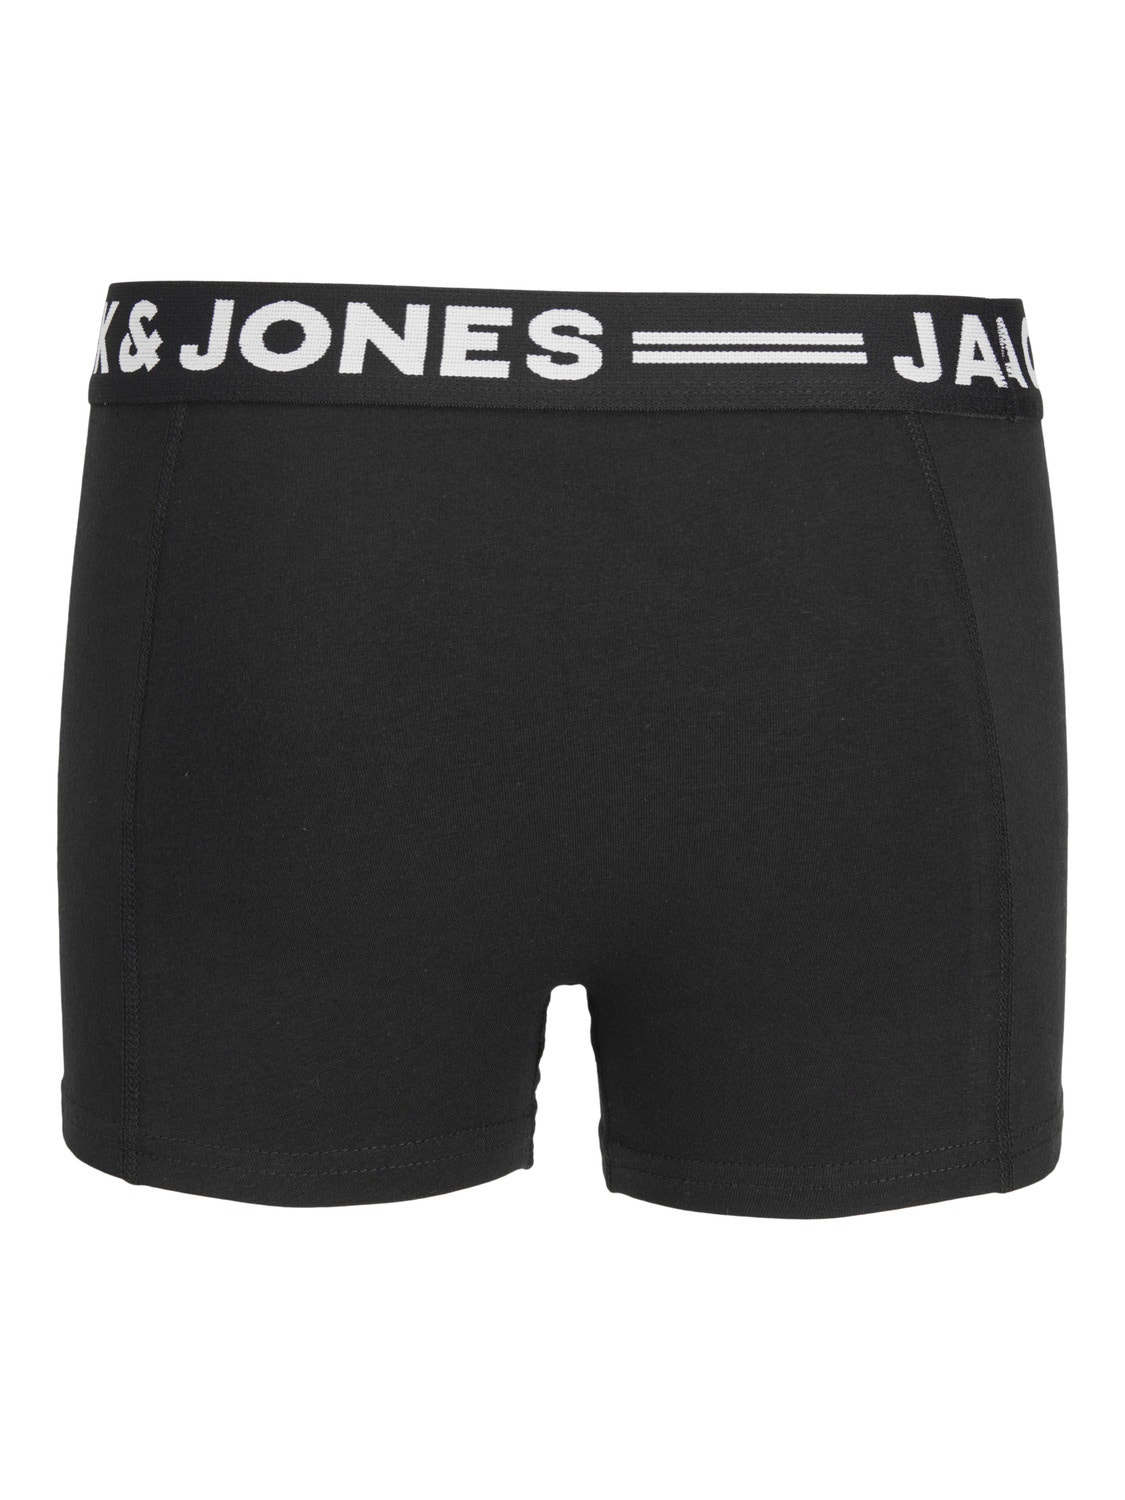 Jack & Jones 3-pack Trunks For boys -Black - 12149293